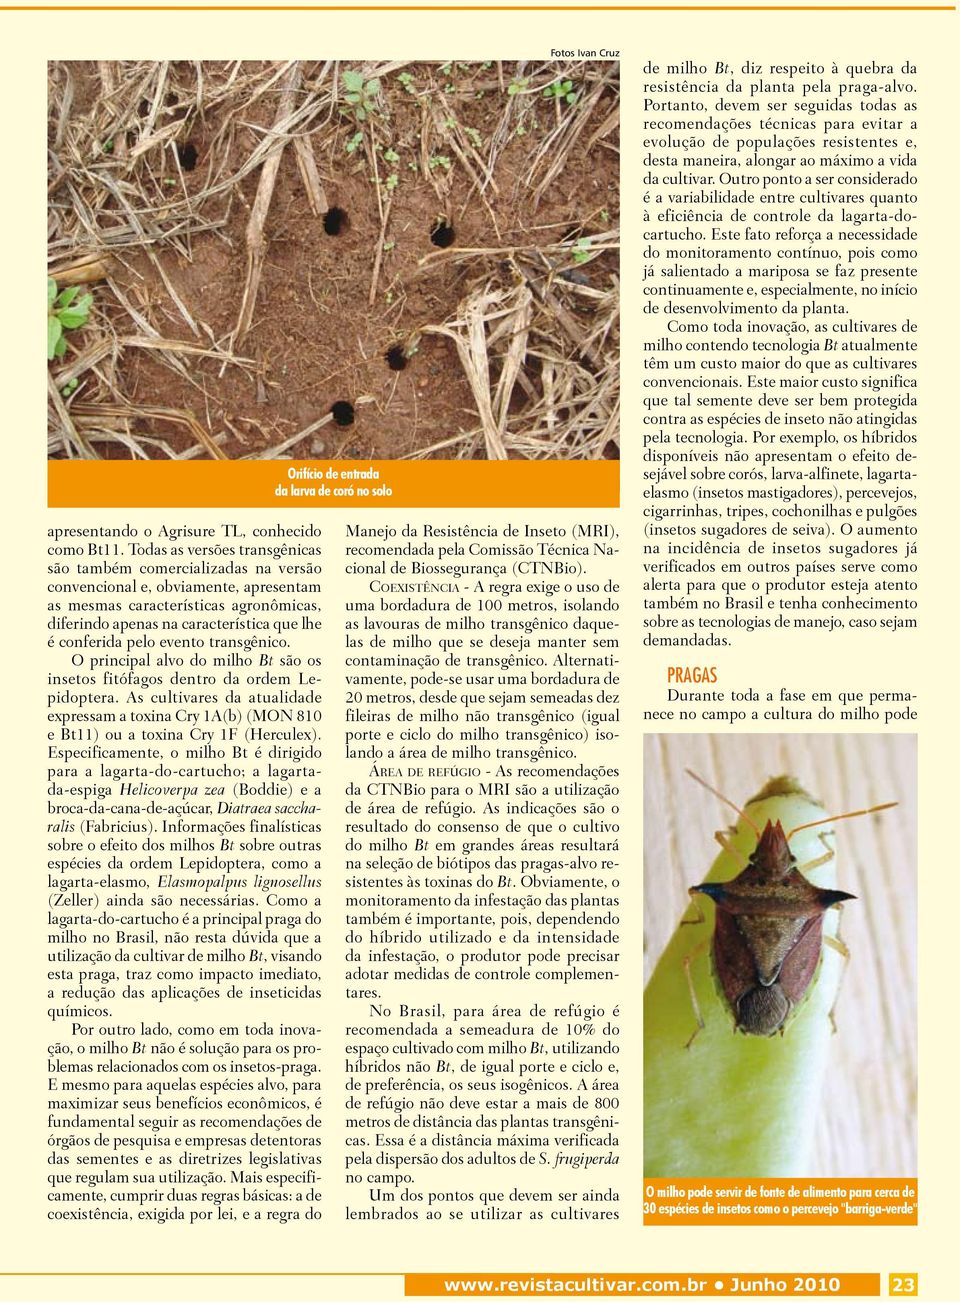 pelo evento transgênico. O principal alvo do milho Bt são os insetos fitófagos dentro da ordem Lepidoptera.